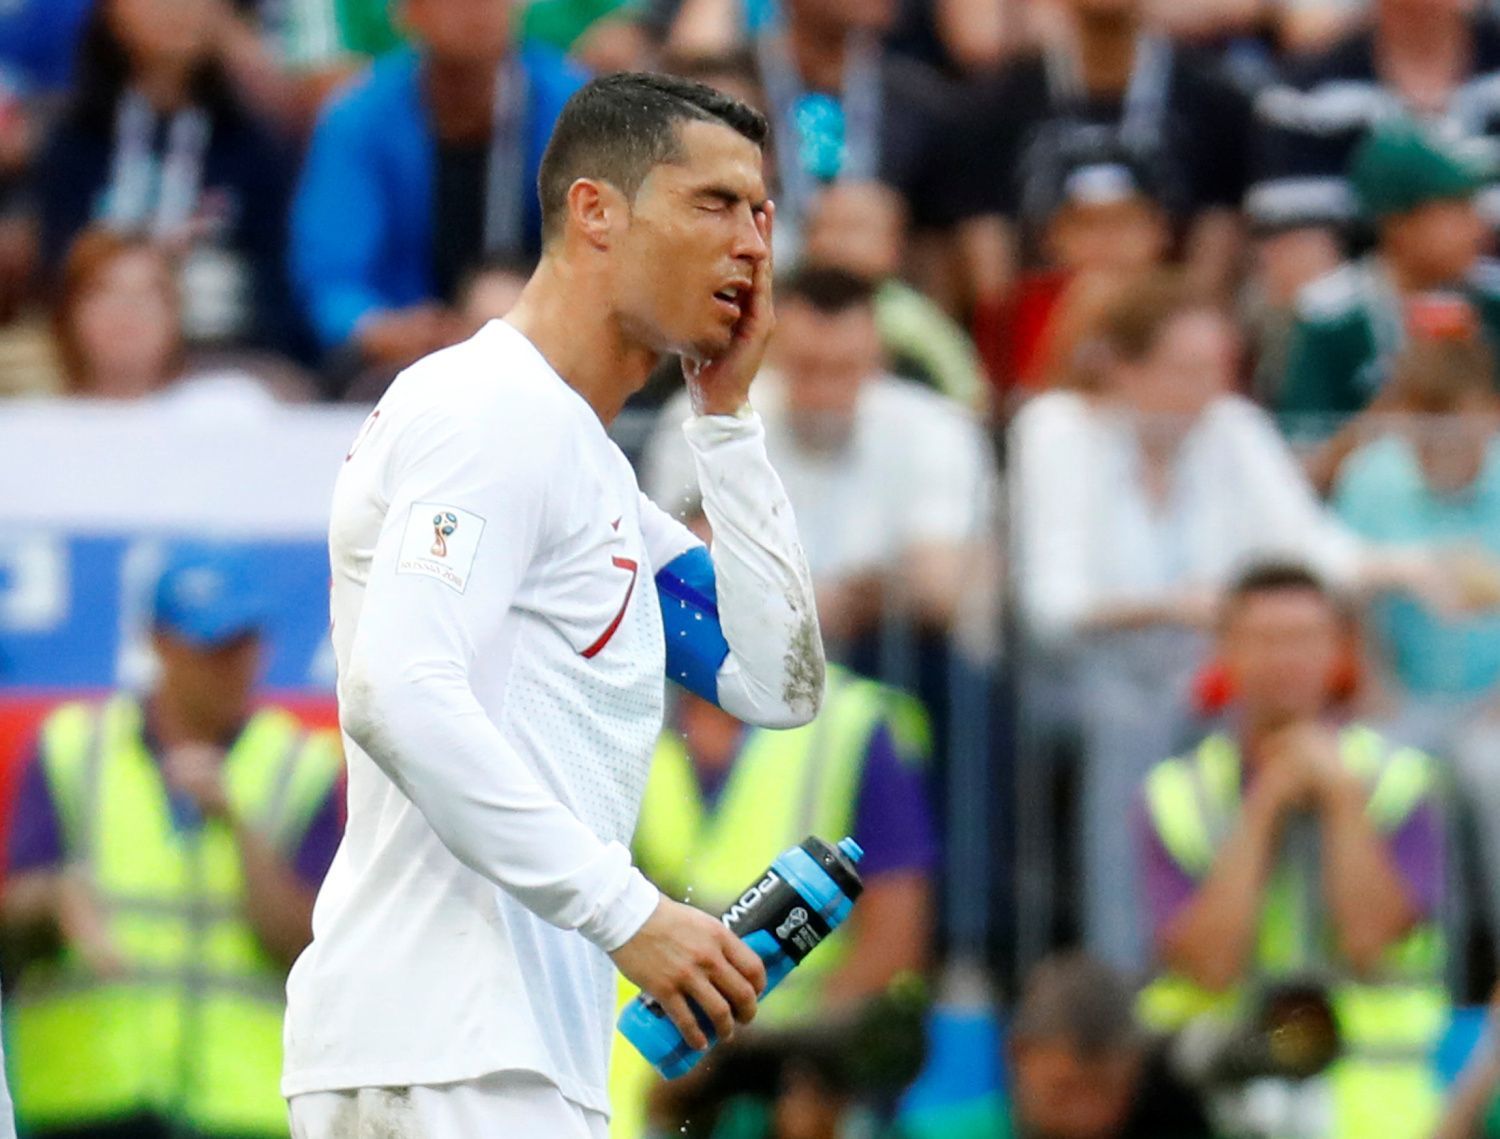 Cristiano Ronaldo v zápase Portugalsko - Maroko na MS 2018